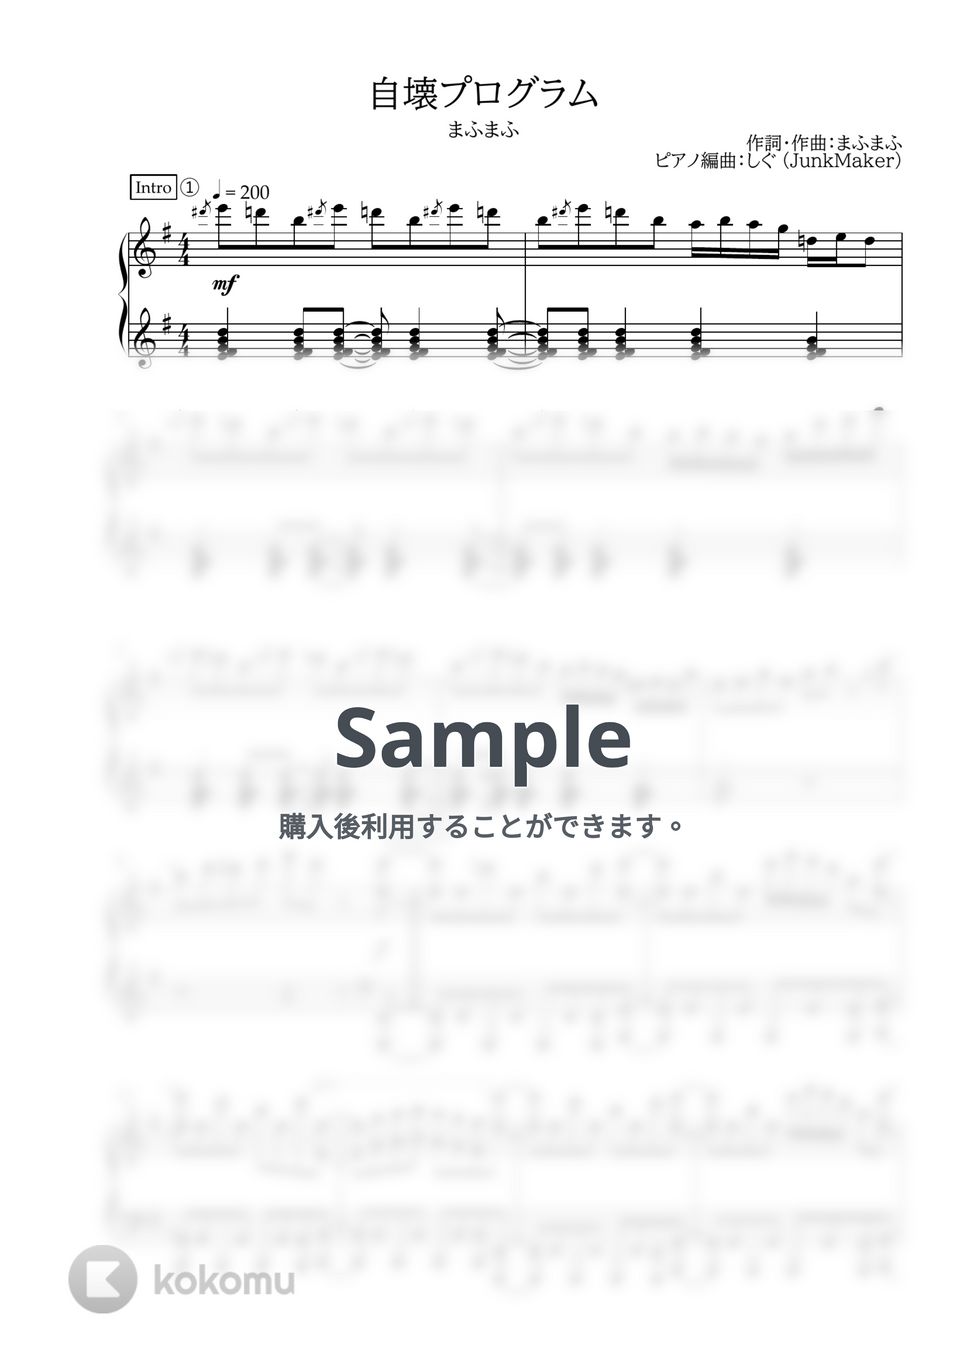 まふまふ - 自壊プログラム (ピアノソロ) by しぐ (JunkMaker)